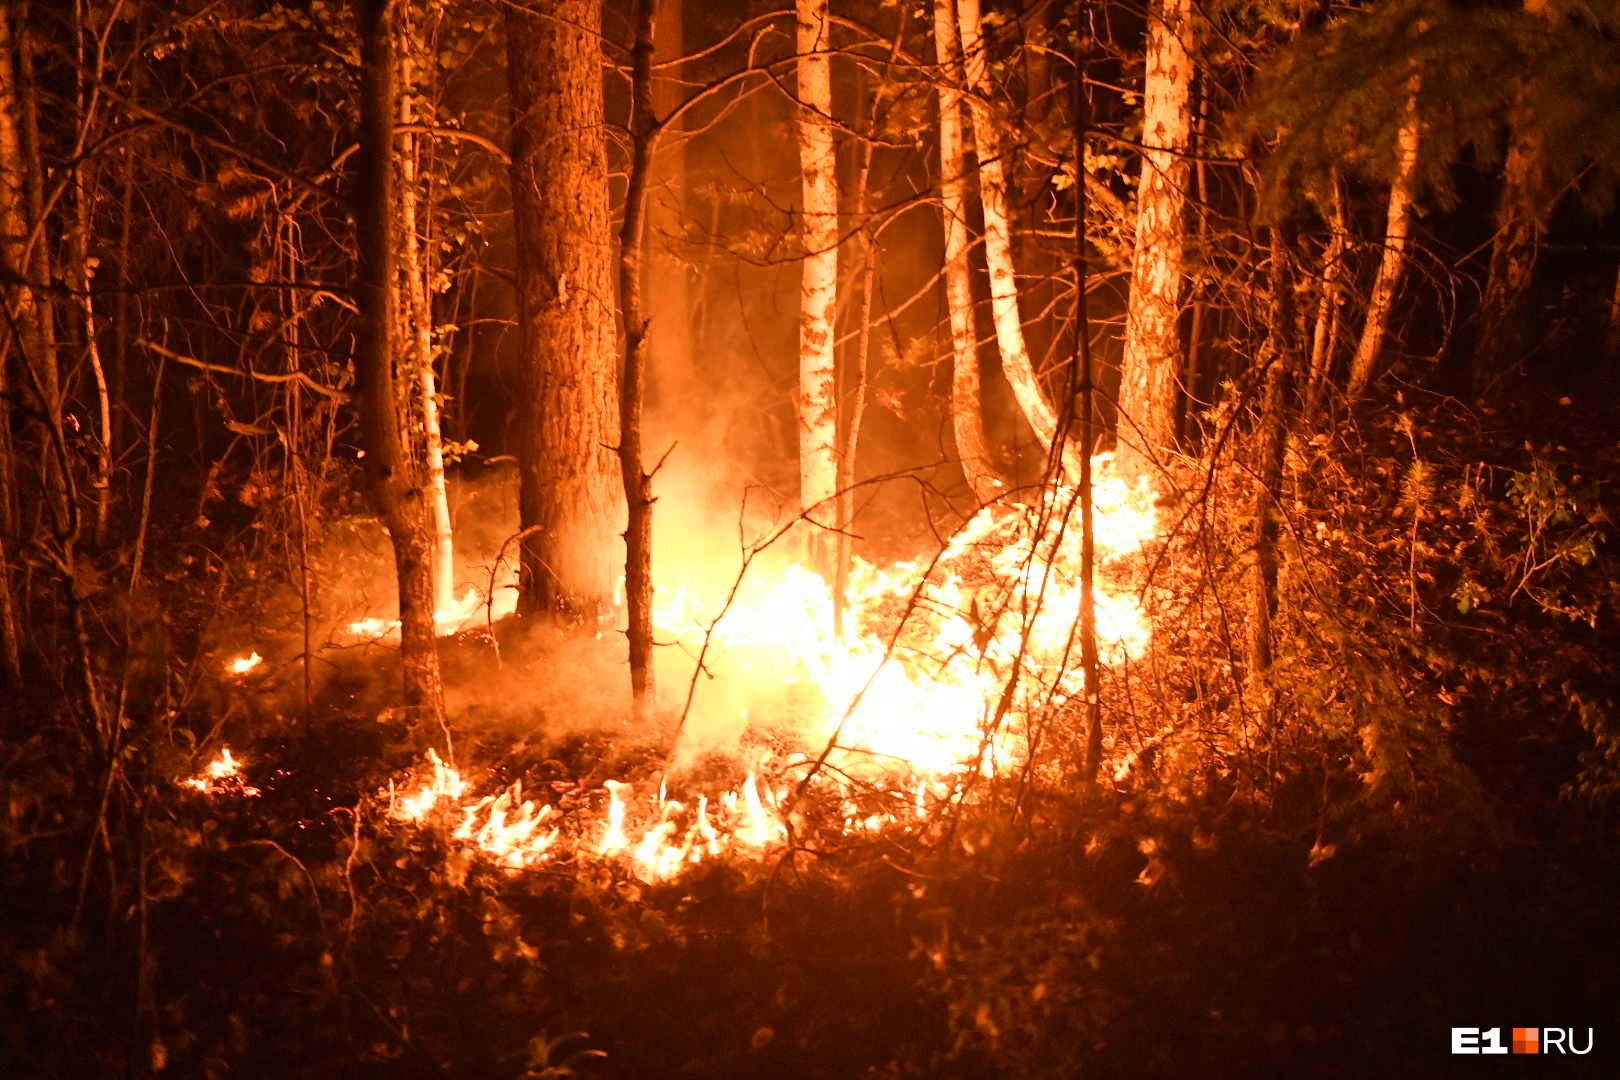 «Смог стоит стеной, и запах гари». Уральцы просят помощи и задыхаются в дыму от лесных пожаров